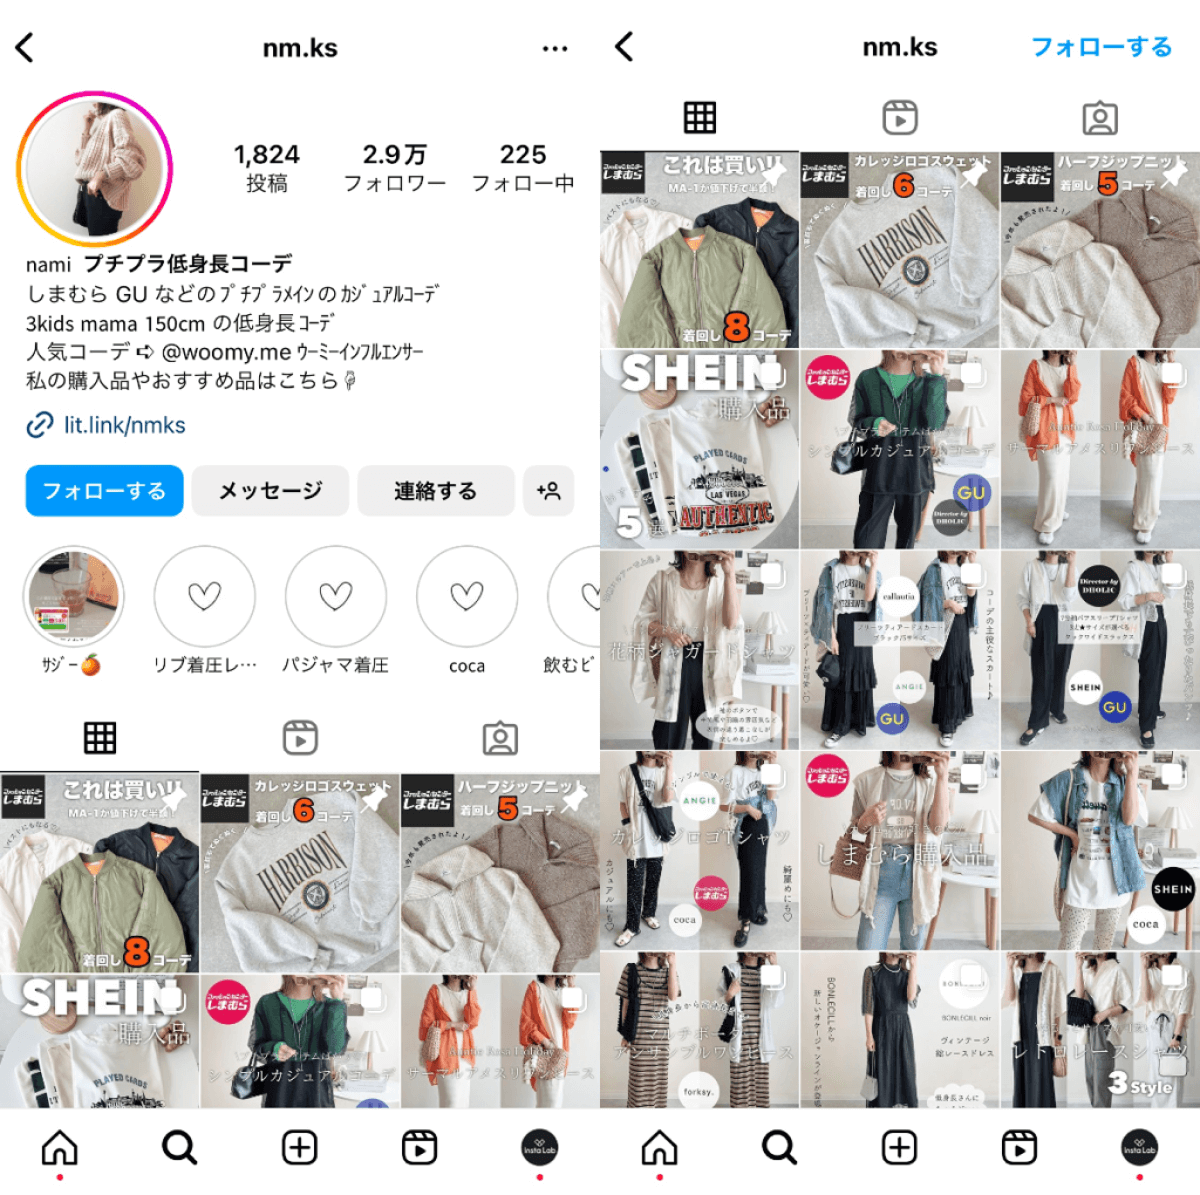 instagram-account-nm-ks